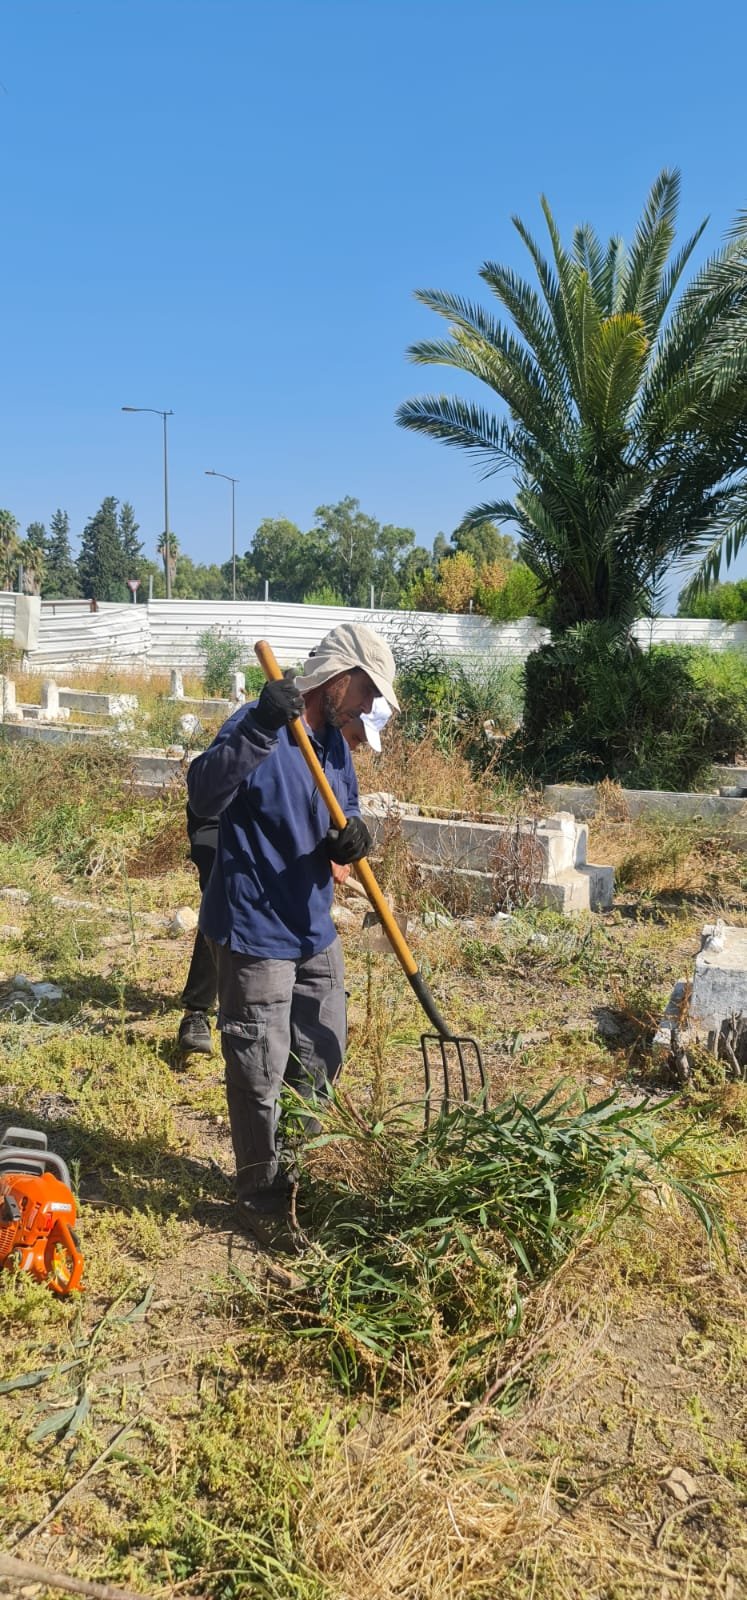 لجنة "أوقافُنا" بالتعاون مع جهات محلية تنظم يوم عمل تطوعي لتنظيف مقبرة القسام-حيفا-0